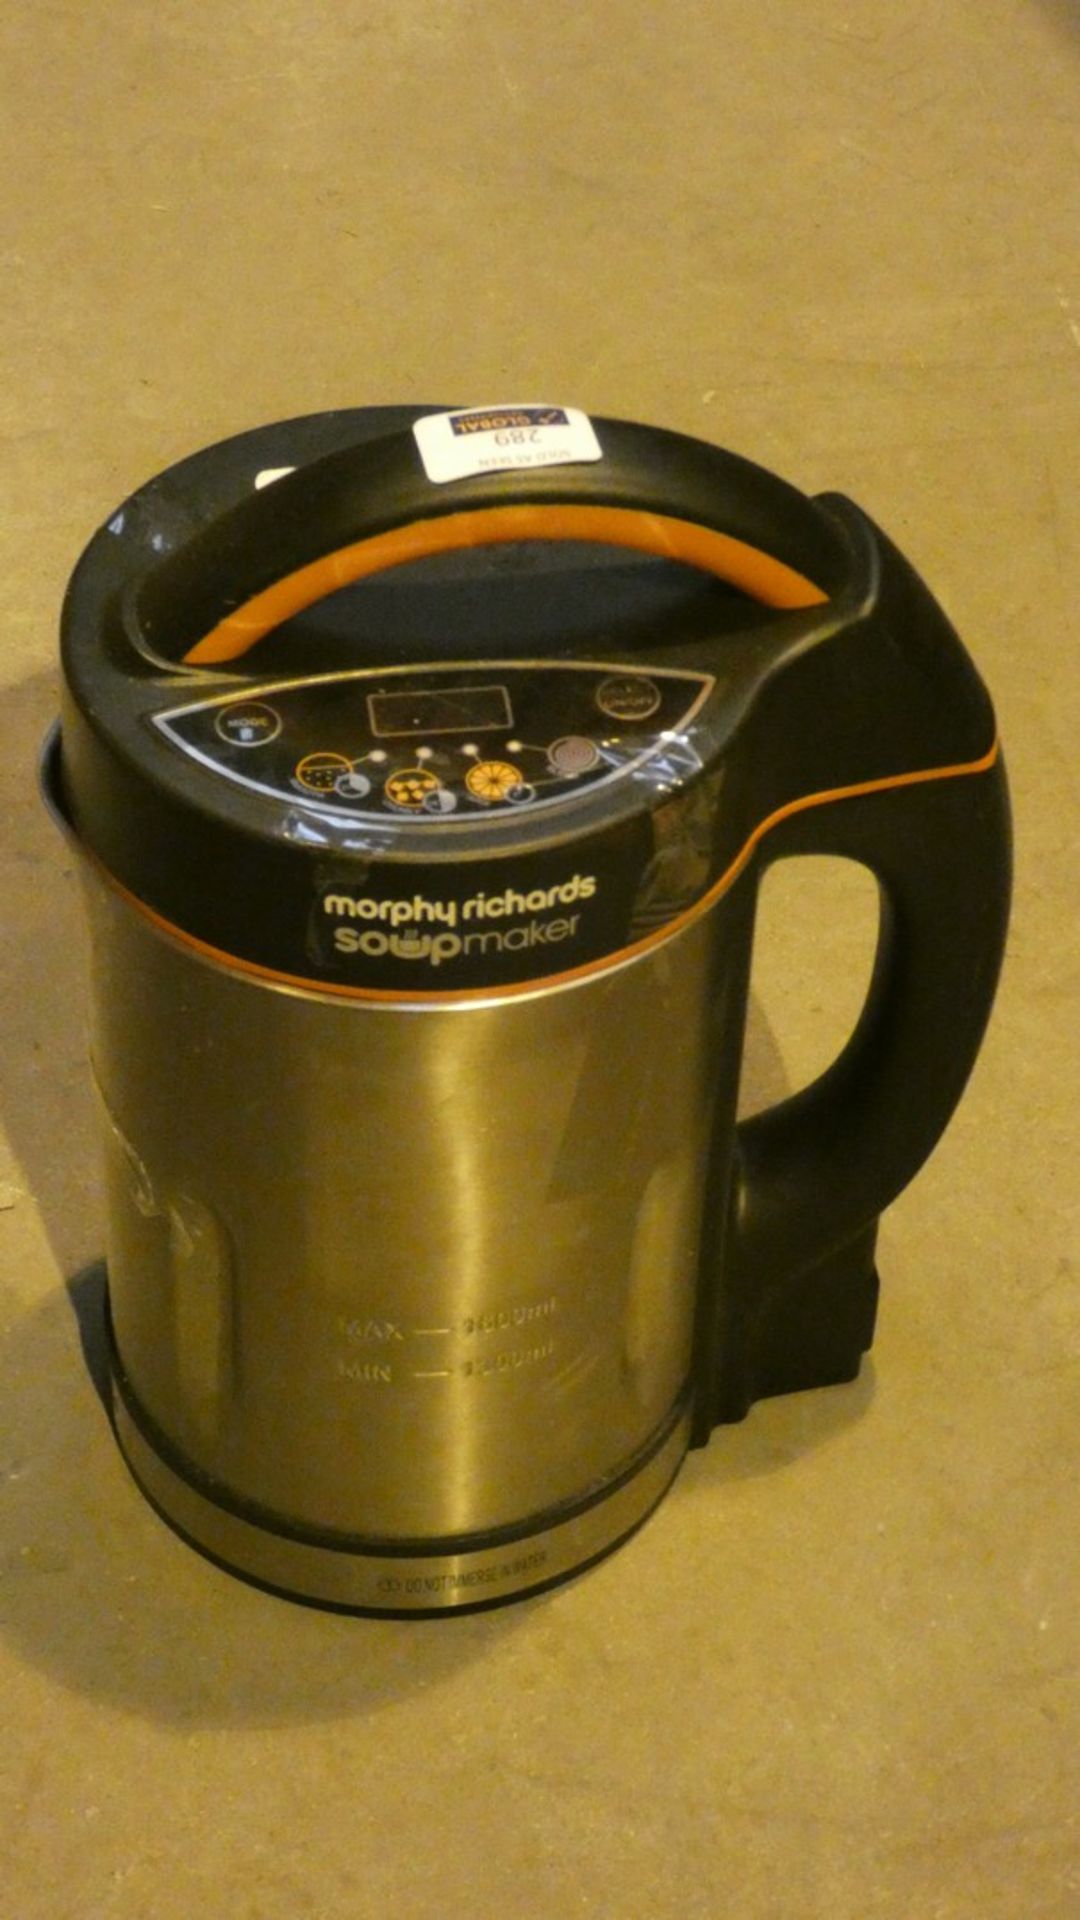 Unboxed Morphy Richards 1.6L Soup Maker RRP £50 (Customer Return)